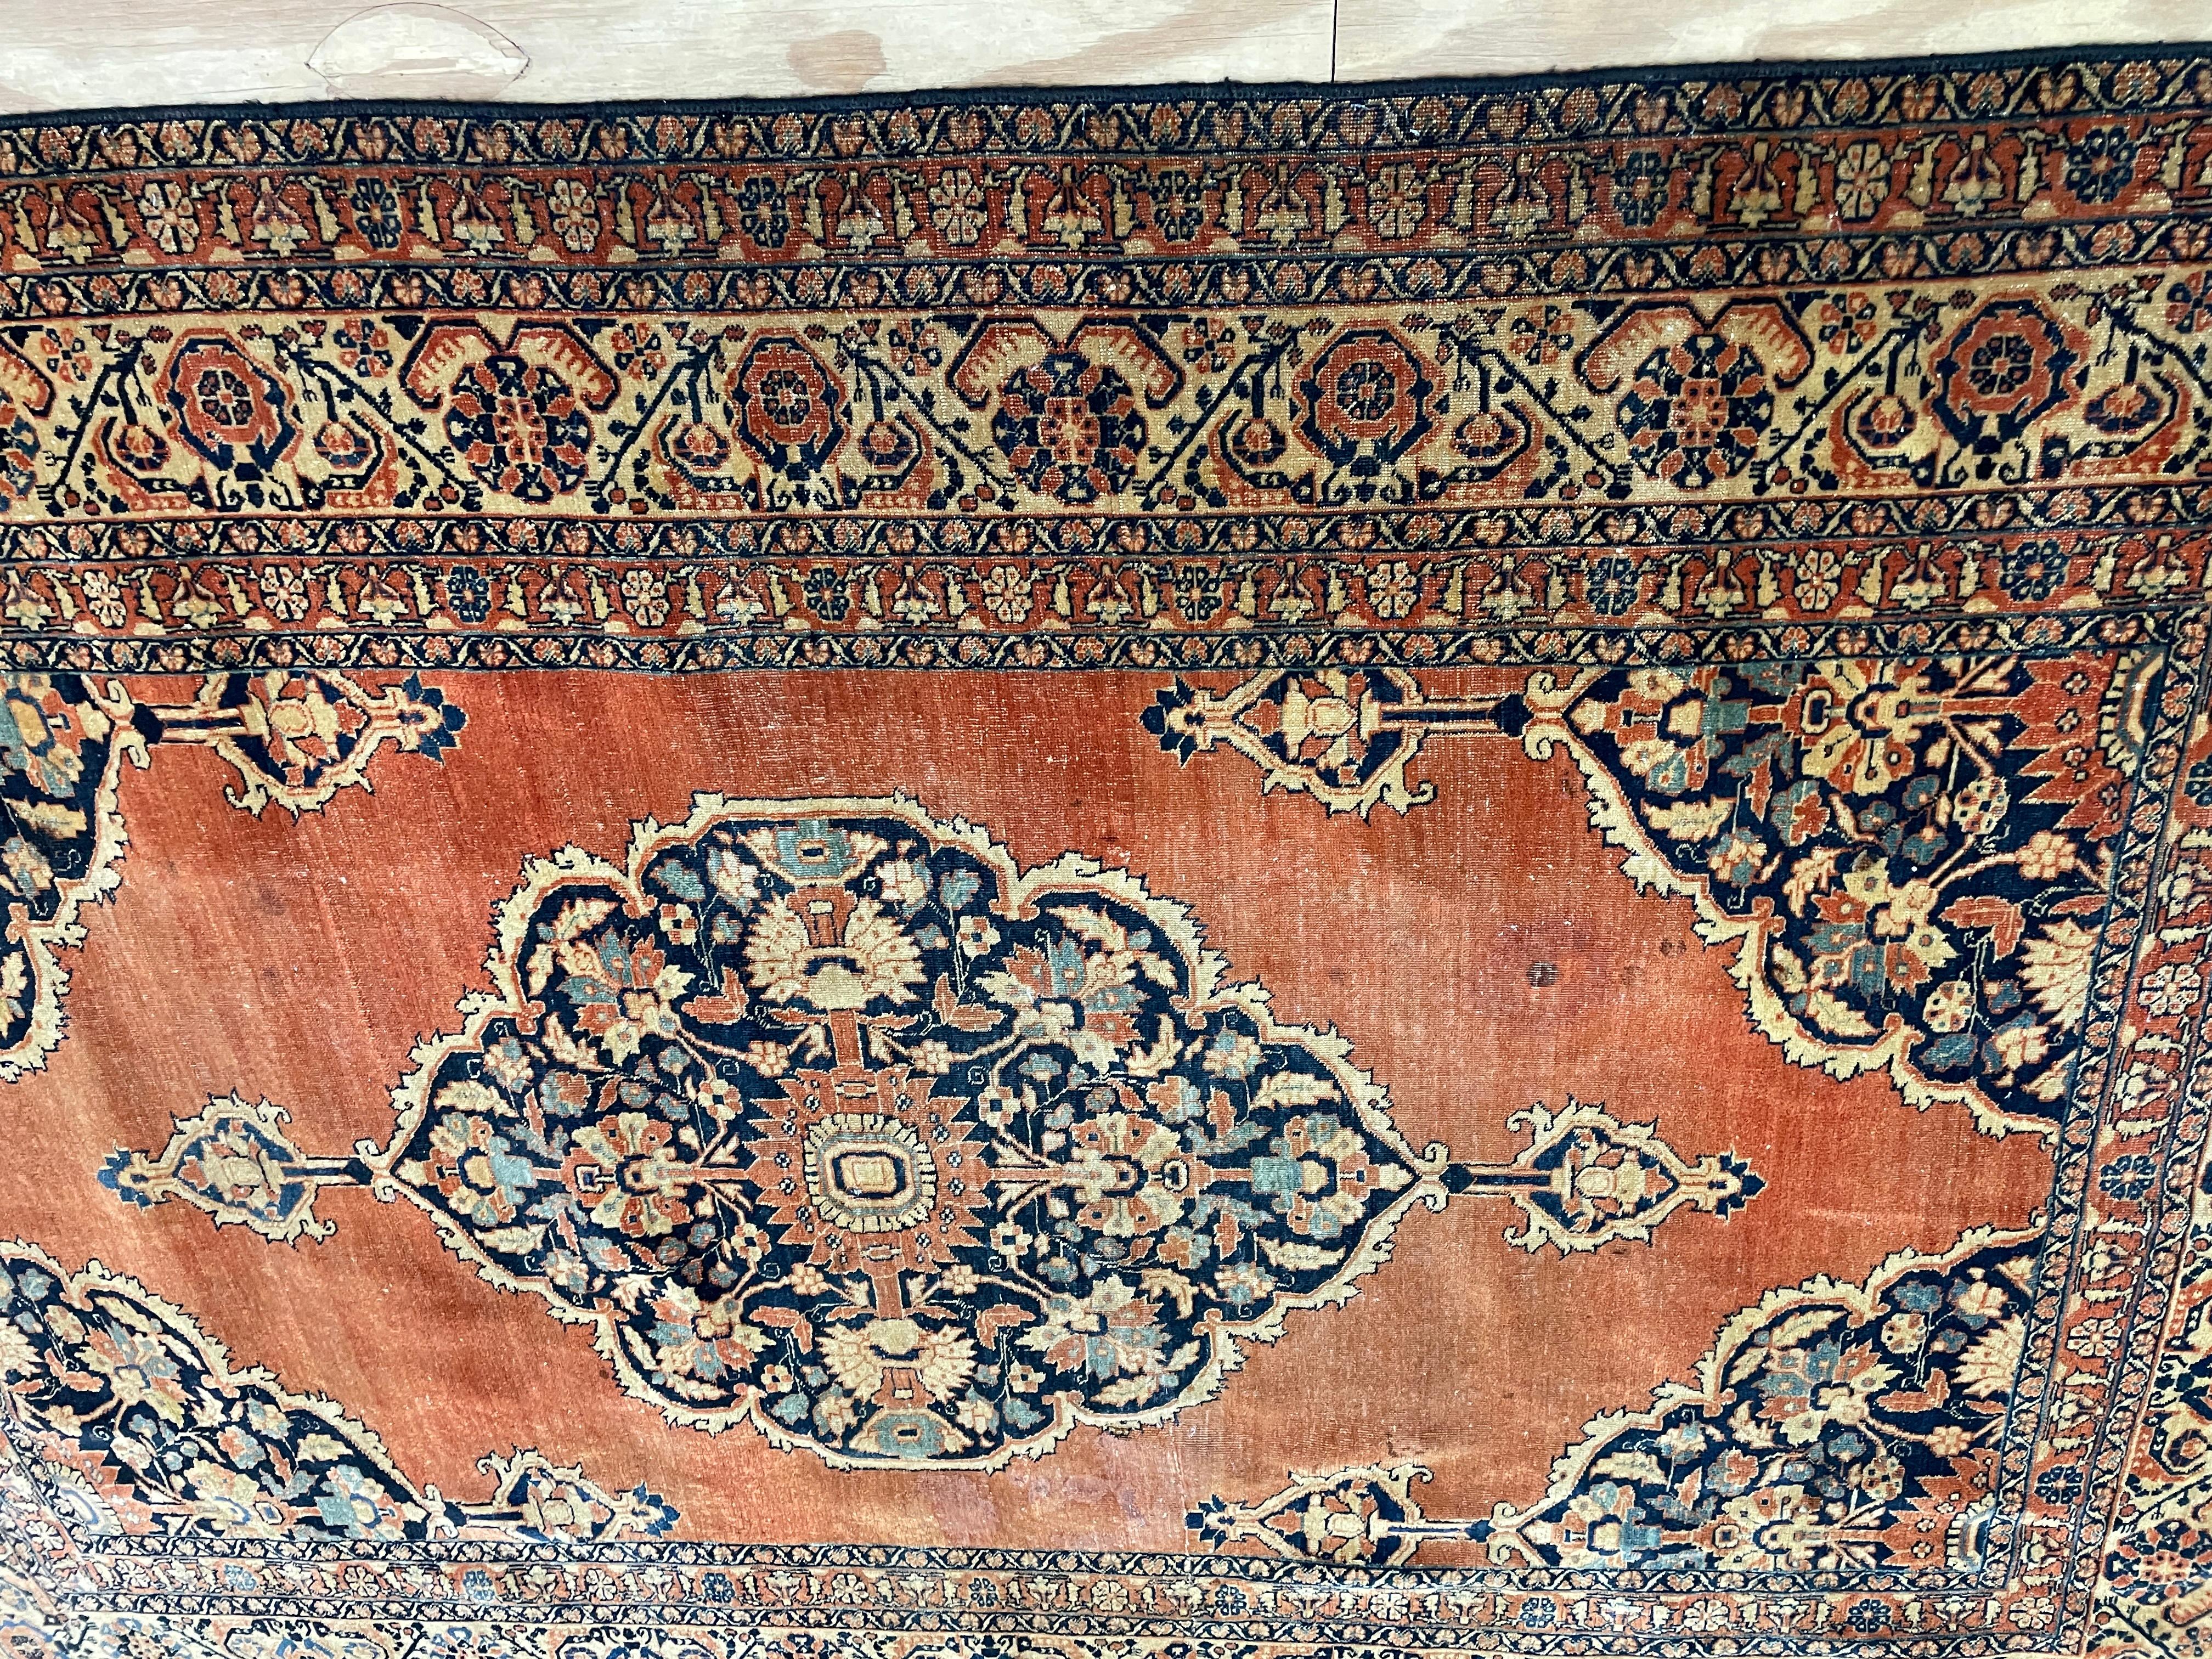 Voici l'exquis Sarouk Feraghan, un tapis intemporel datant de la fin des années 1880 et remarquablement conservé en excellent état.

Tissé dans et autour de la région pittoresque d'Arak, dans le nord-ouest de l'Iran, ce tapis arbore un captivant